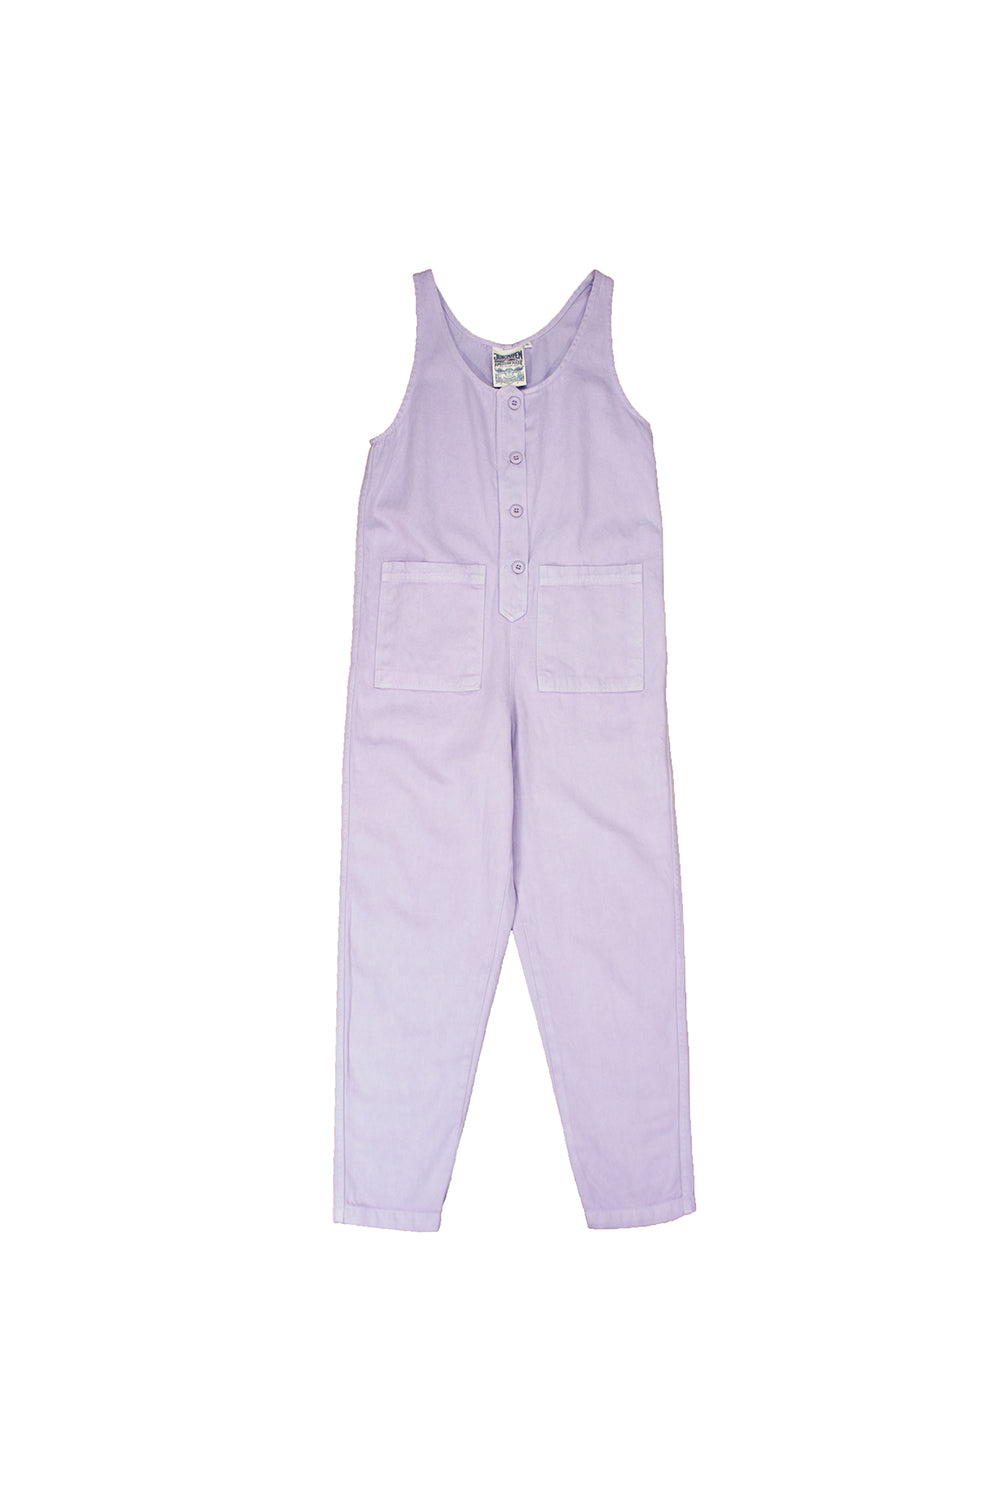 Button Front Jumper - Sale Colors | Jungmaven Hemp Clothing & Accessories / Color: Misty Lilac